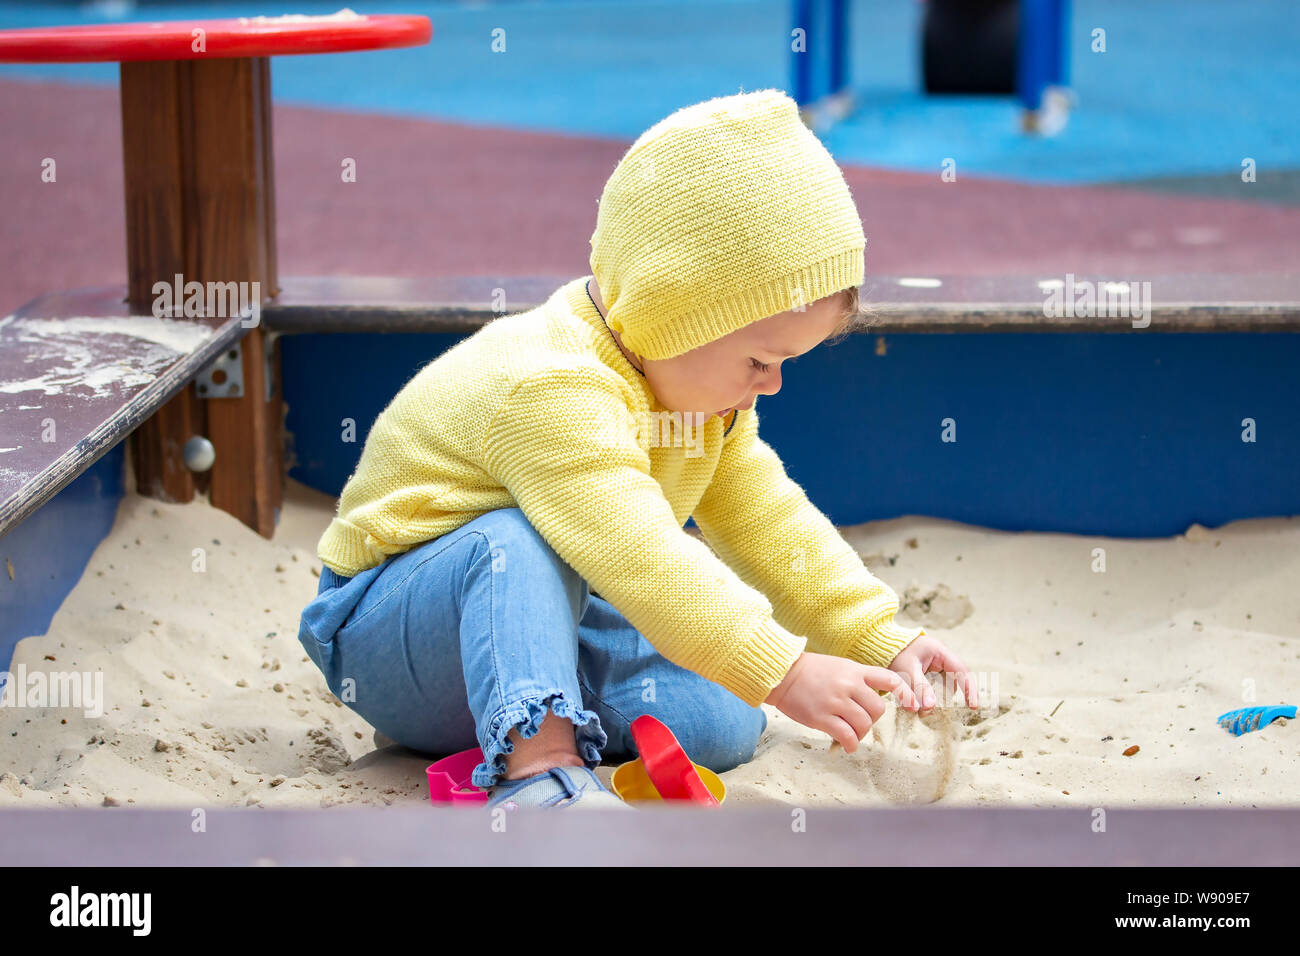 Kind, Mädchen, Junge europäische Spielen mit Sand im Sandkasten. Kind Baby  ein Jahr alt ist der Sand mit den Händen berührt, spielt auf dem  Spielplatz. Kind in Stockfotografie - Alamy